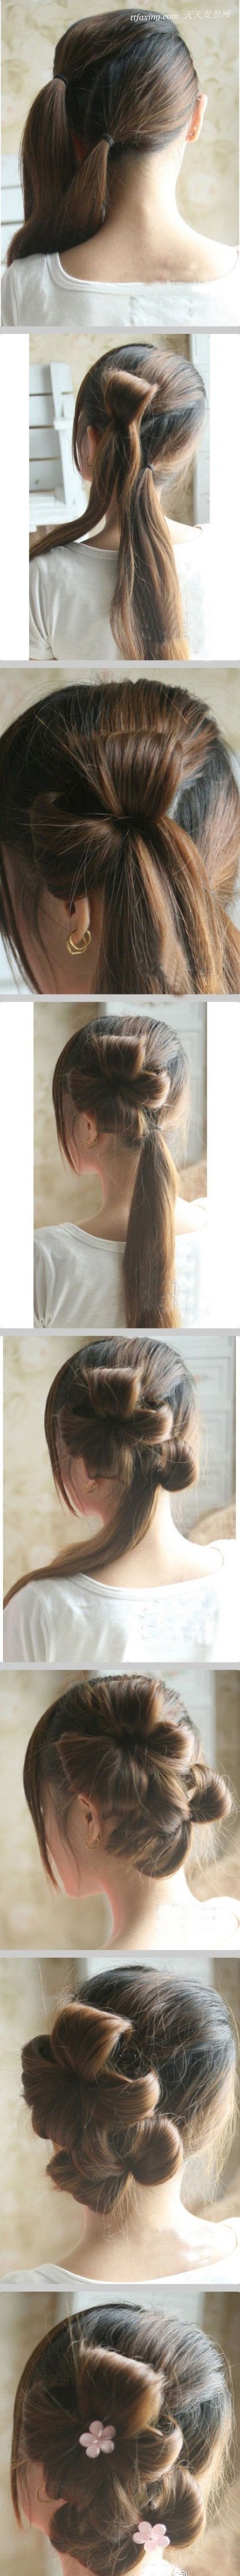 一个美美的花瓣头发型，你喜欢吗？步骤学如何扎 zaoxingkong.com